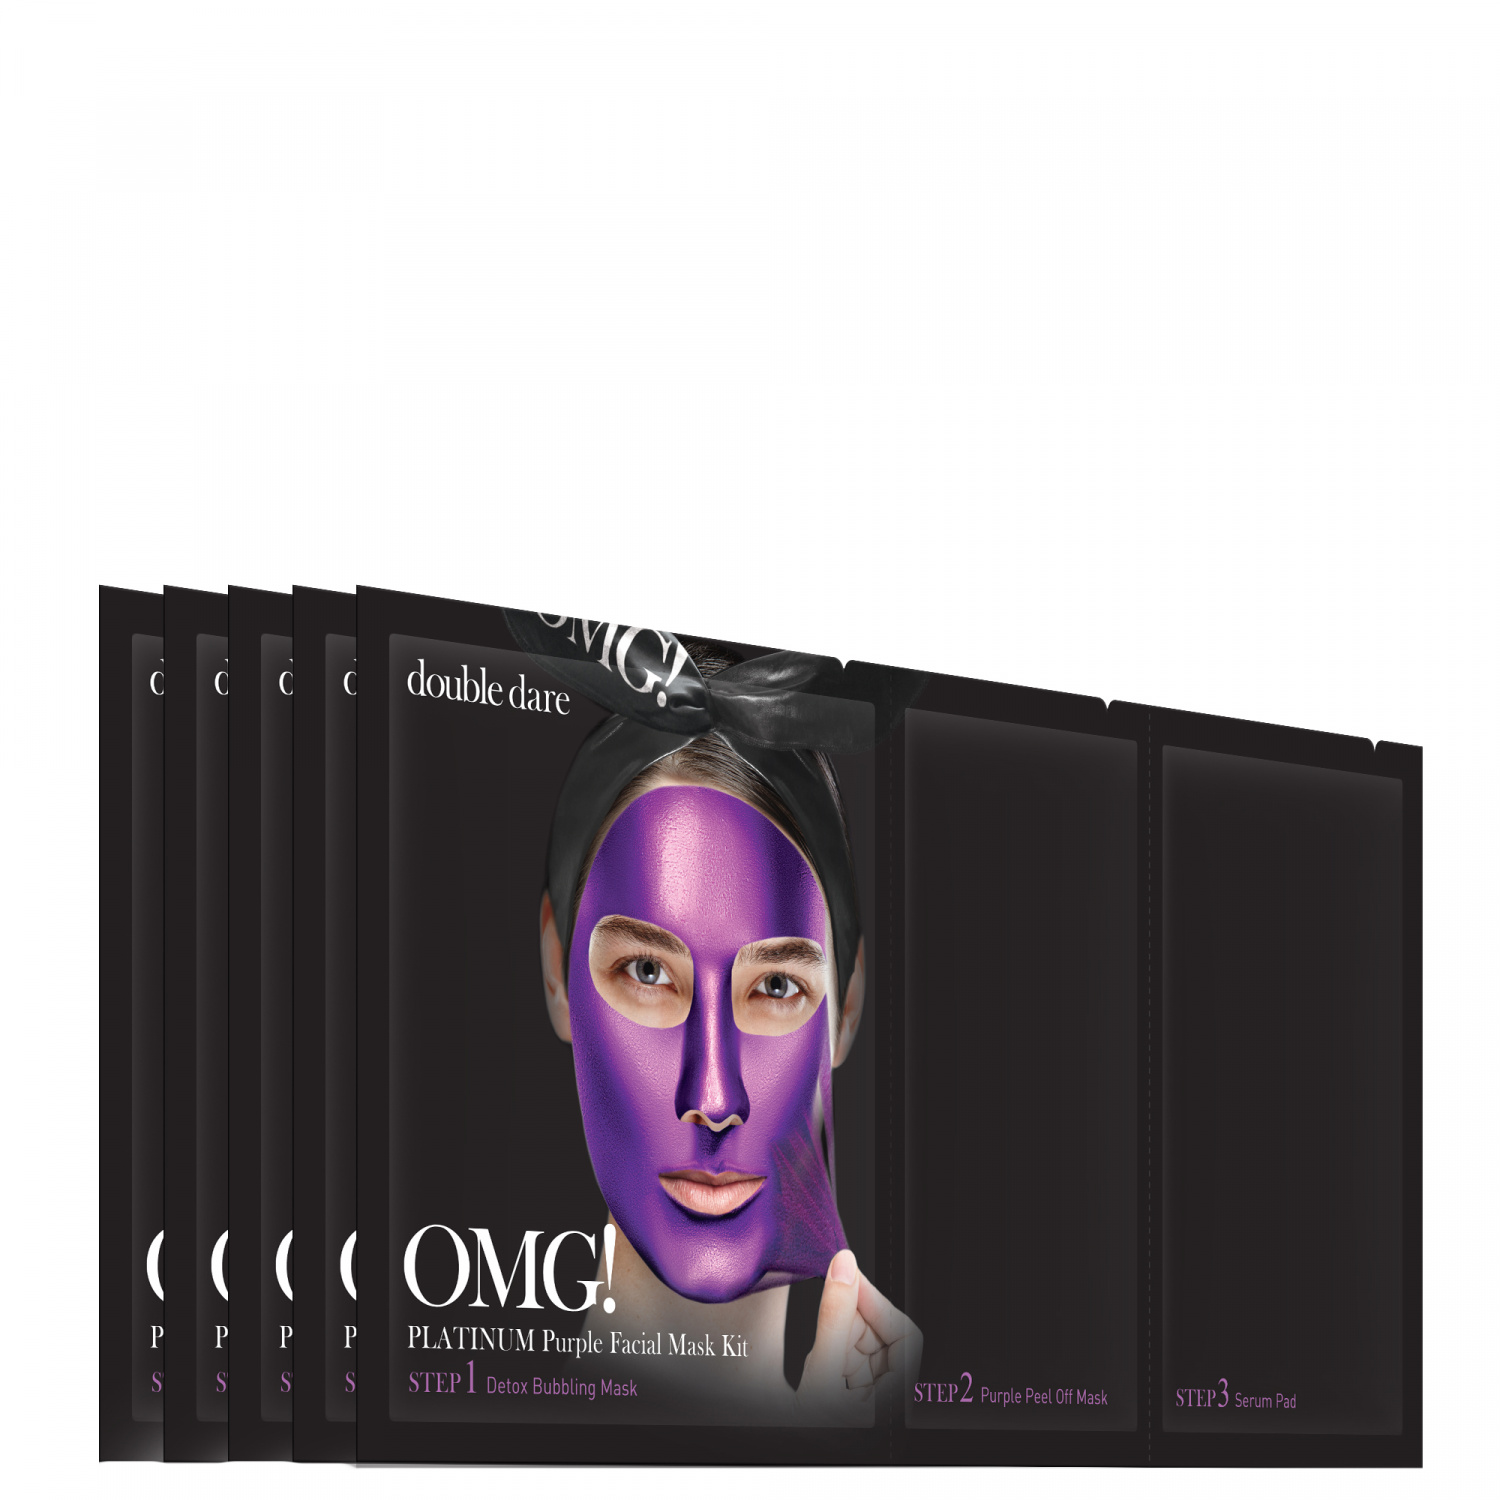 Double Dare OMG! Platinum PURPLE Facial Mask Kit 5p - интернет-магазин профессиональной косметики Spadream, изображение 40718